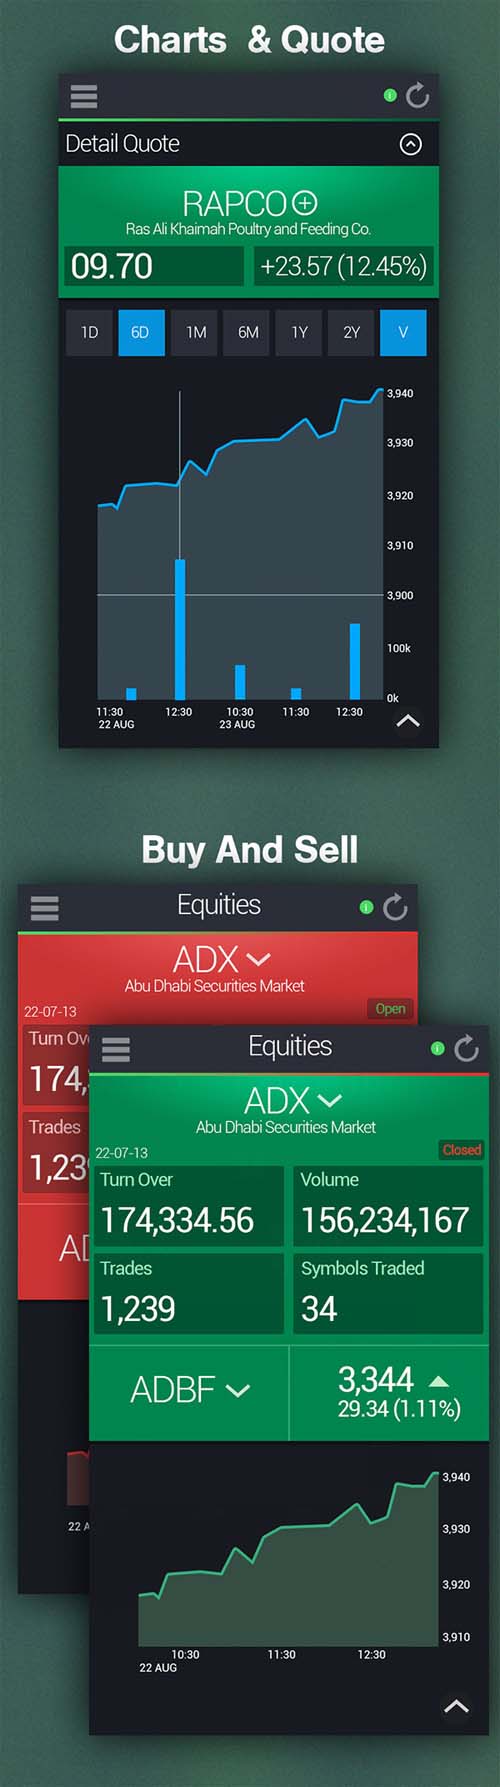 BULk- Stock Market Mobile Application